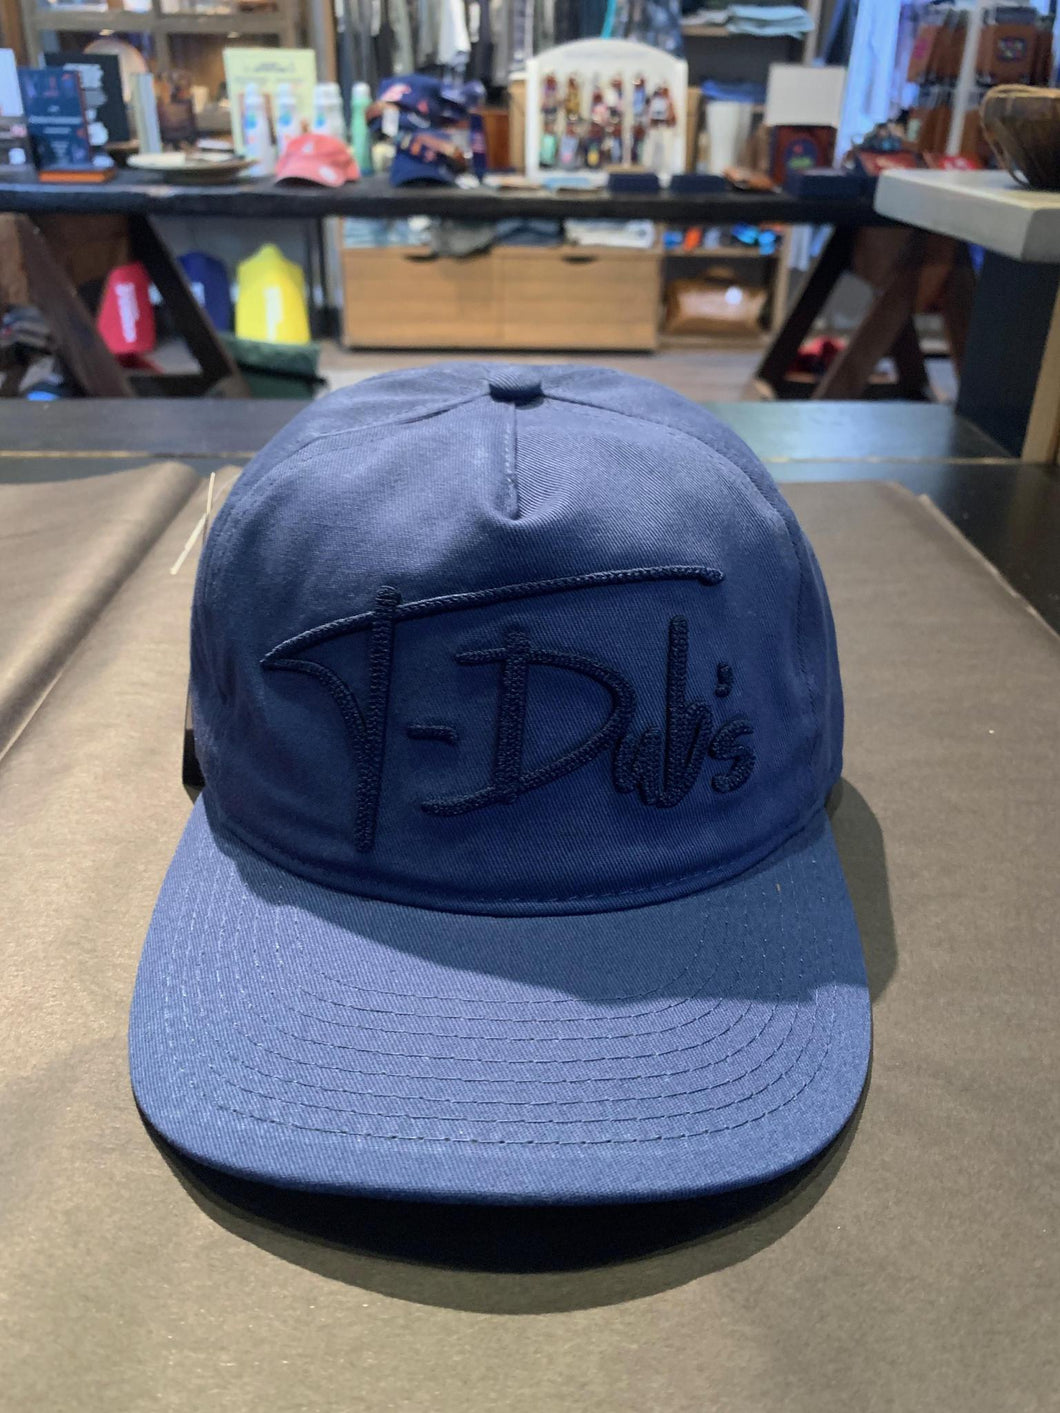 T-Dub's Hat